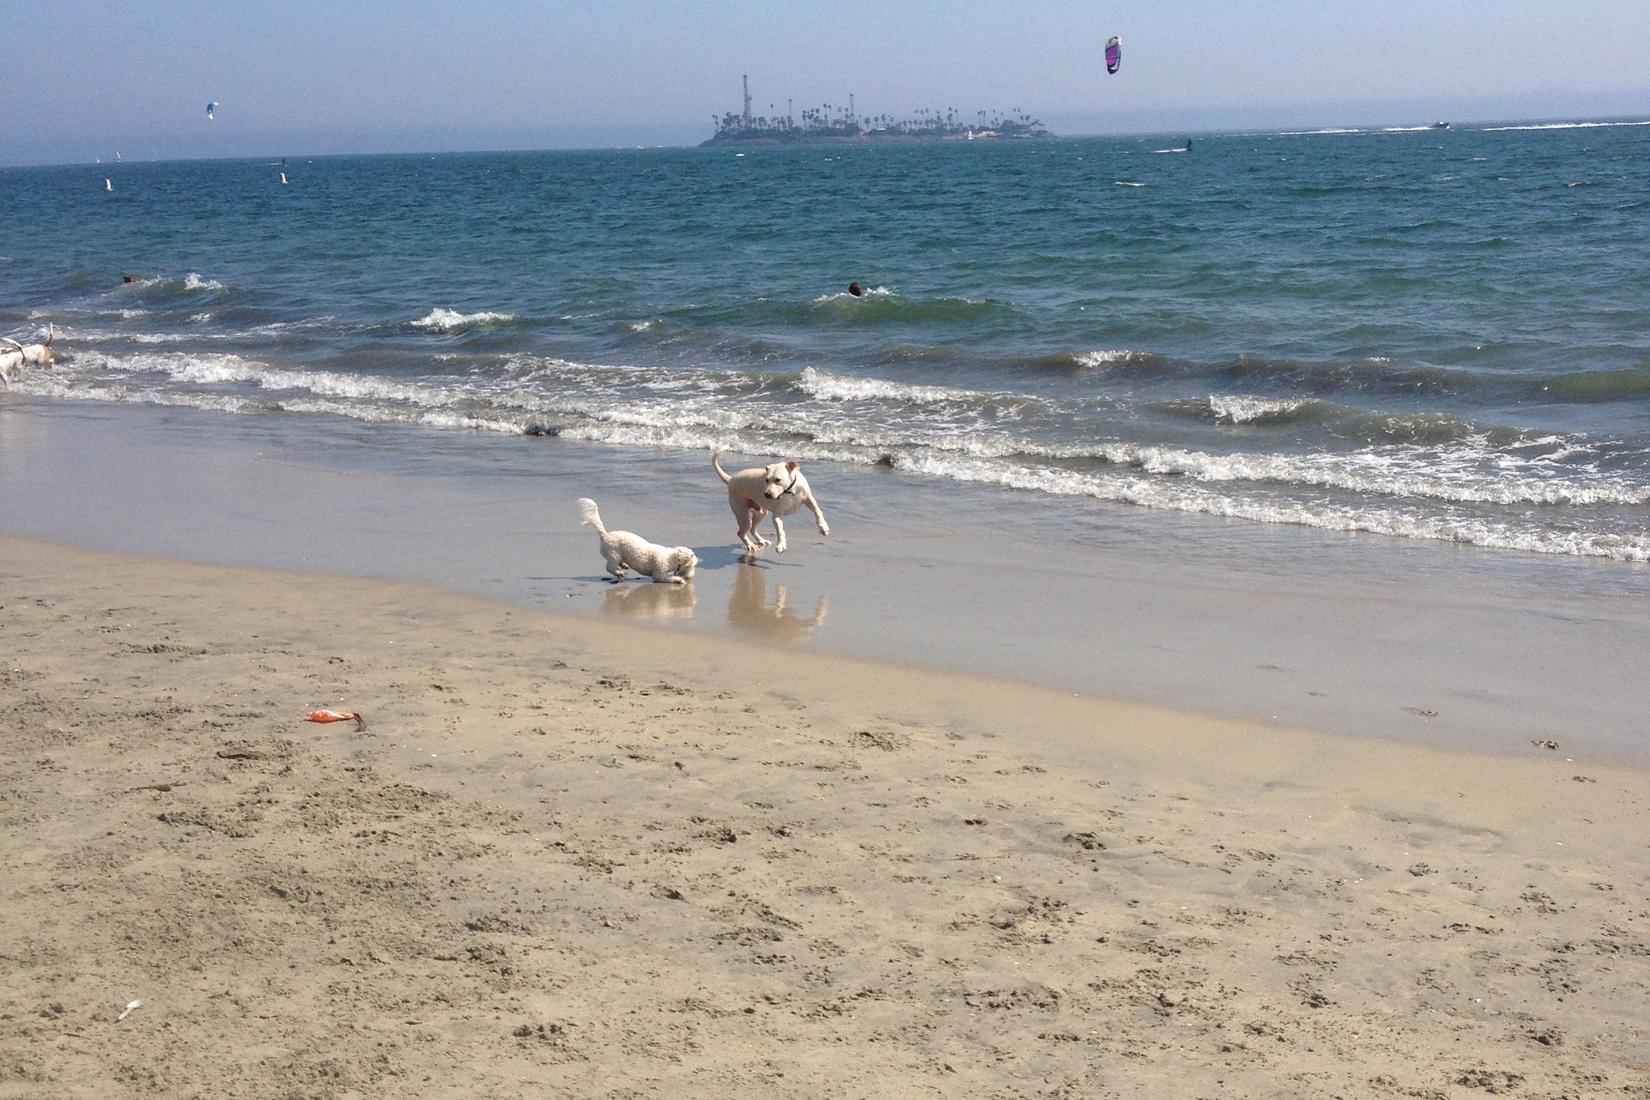 Sandee - Rosie's Dog Beach